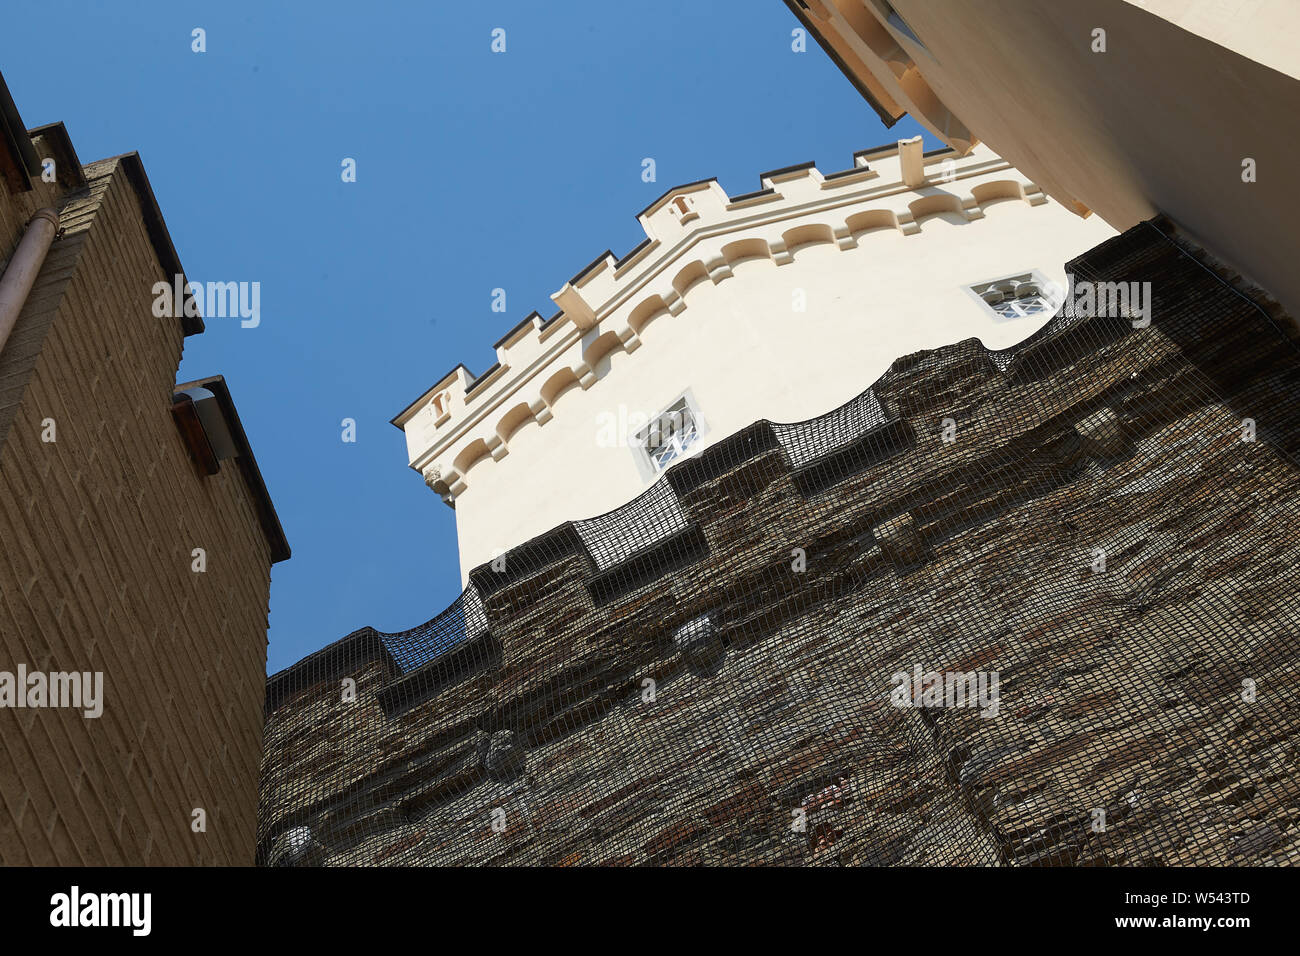 Koblenz, Deutschland. 26. Juli, 2019. Netze schützen eine Der bruchstein Mauern von Schloss Stolzenfels hoch über dem Rhein in der Nähe von Koblenz. Das Schloss wird weiter im laufenden Betrieb renoviert. Aufgrund der großen Menge von Touristen, jedoch gibt es keine Werke, die in der öffentlich zugänglichen Räume in diesen Tagen. Das Schloss ist ein Teil des UNESCO-Welterbes Mittelrheintal. Quelle: Thomas Frey/dpa/Alamy leben Nachrichten Stockfoto